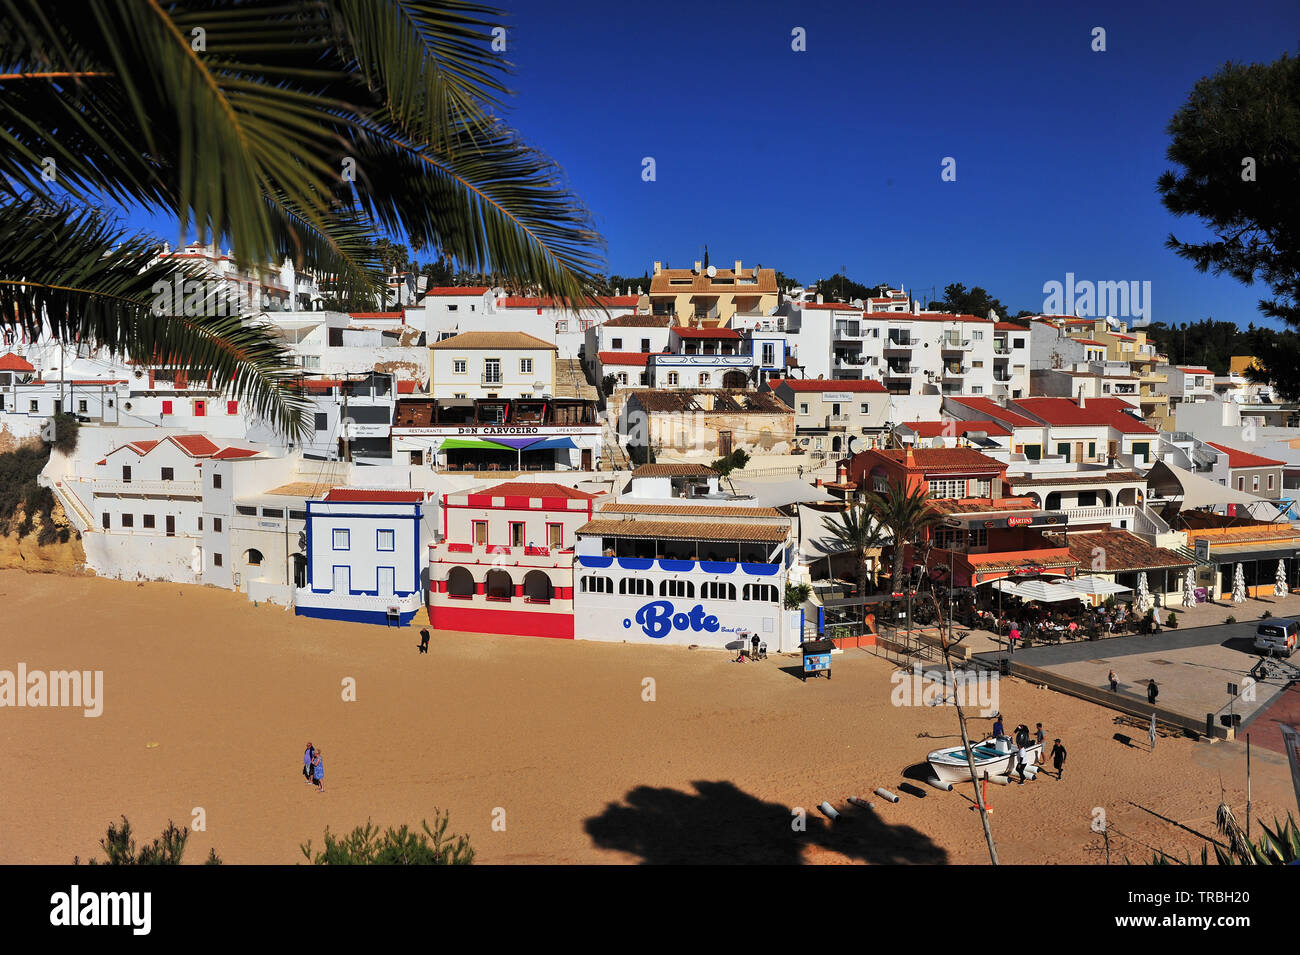 CARVOEIRO, PORTUGAL - 3. März: Weiße Häuser am Strand von Carvoeiro, Portugal am 3. März 2019. Stockfoto